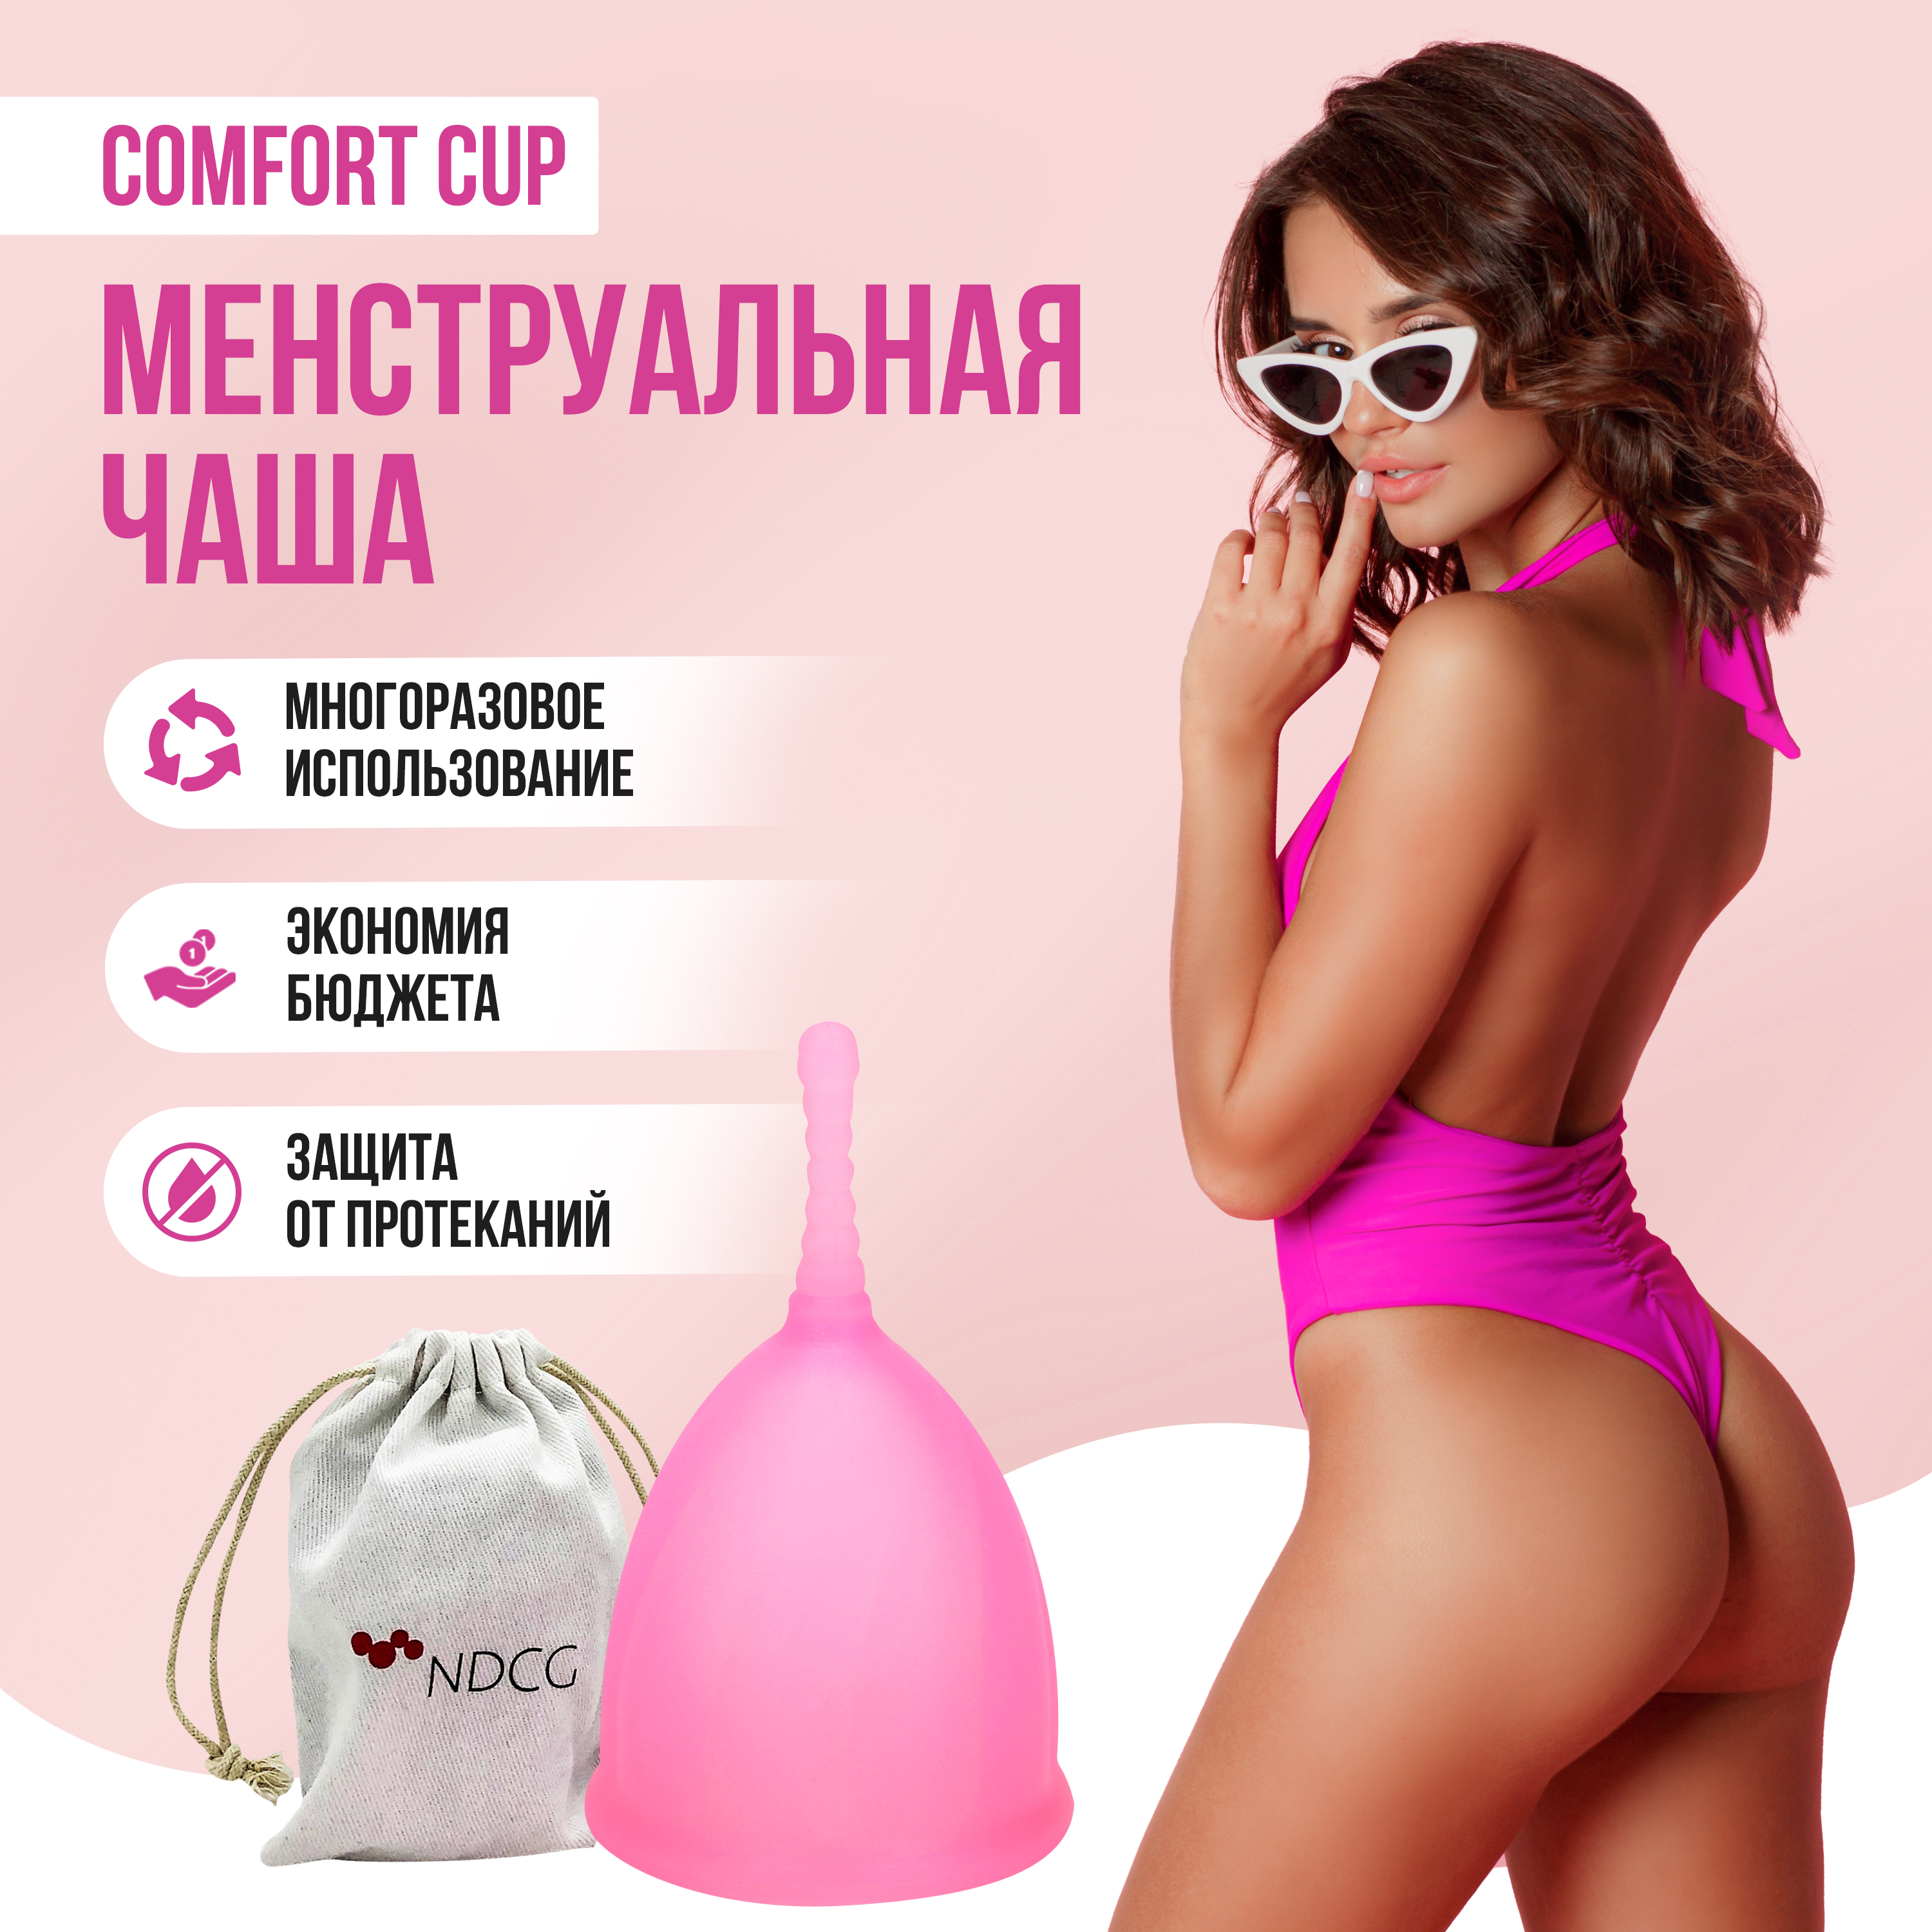 Менструальная чаша NDCG Comfort Cup, размер M